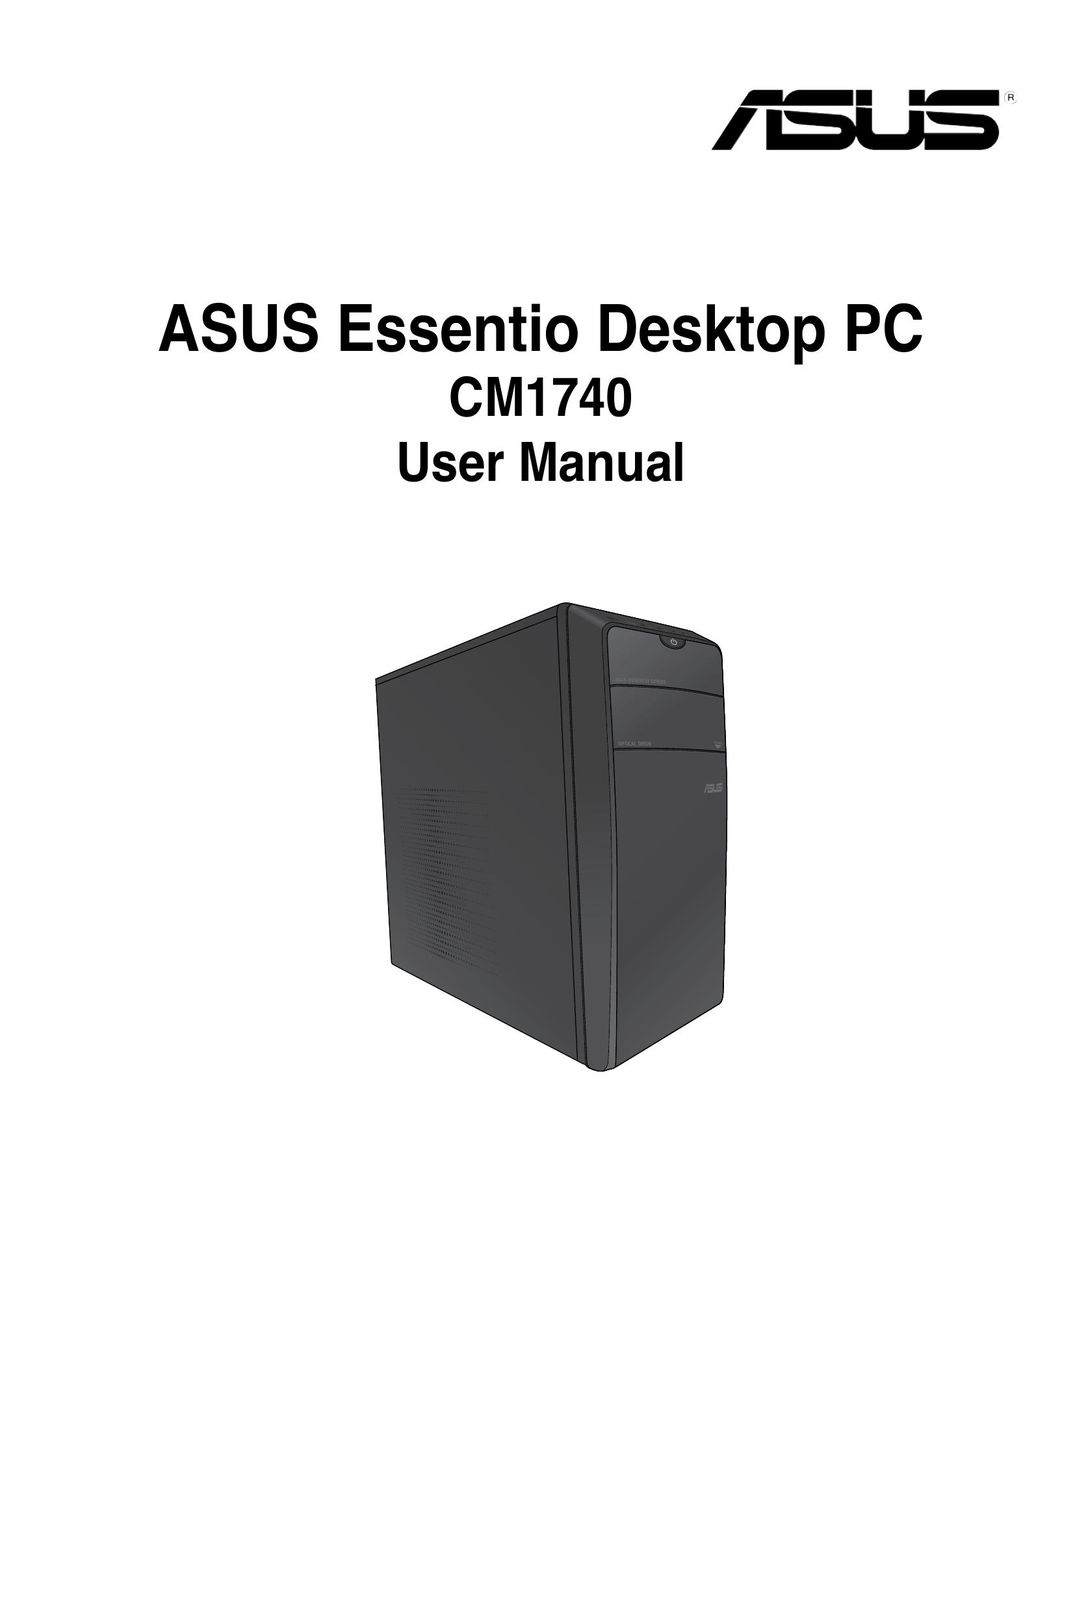 Asus CM1740 Personal Computer User Manual